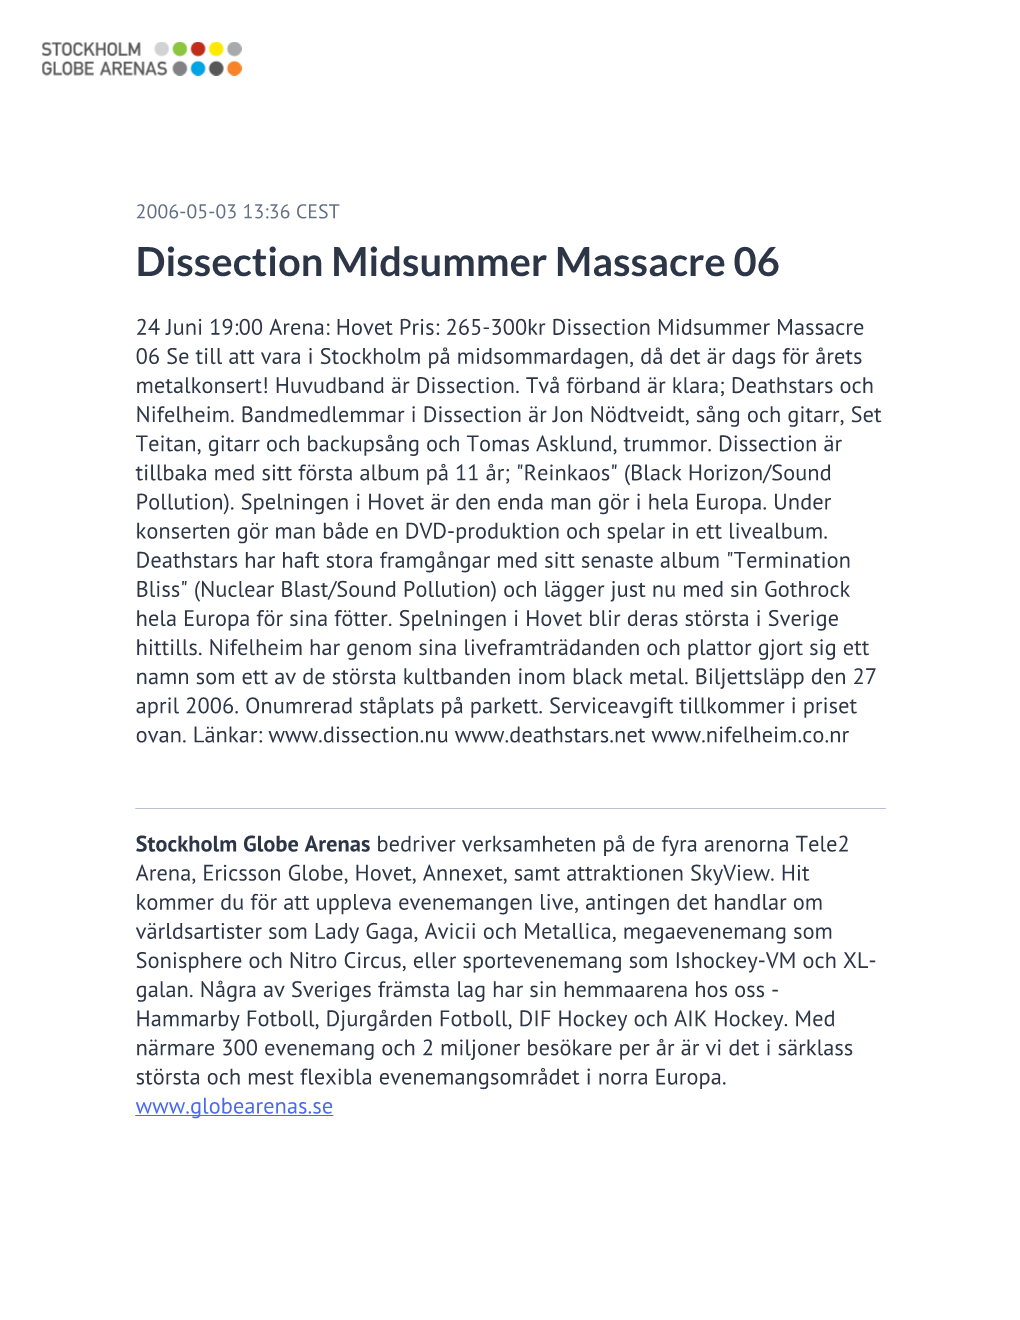 Dissection Midsummer Massacre 06